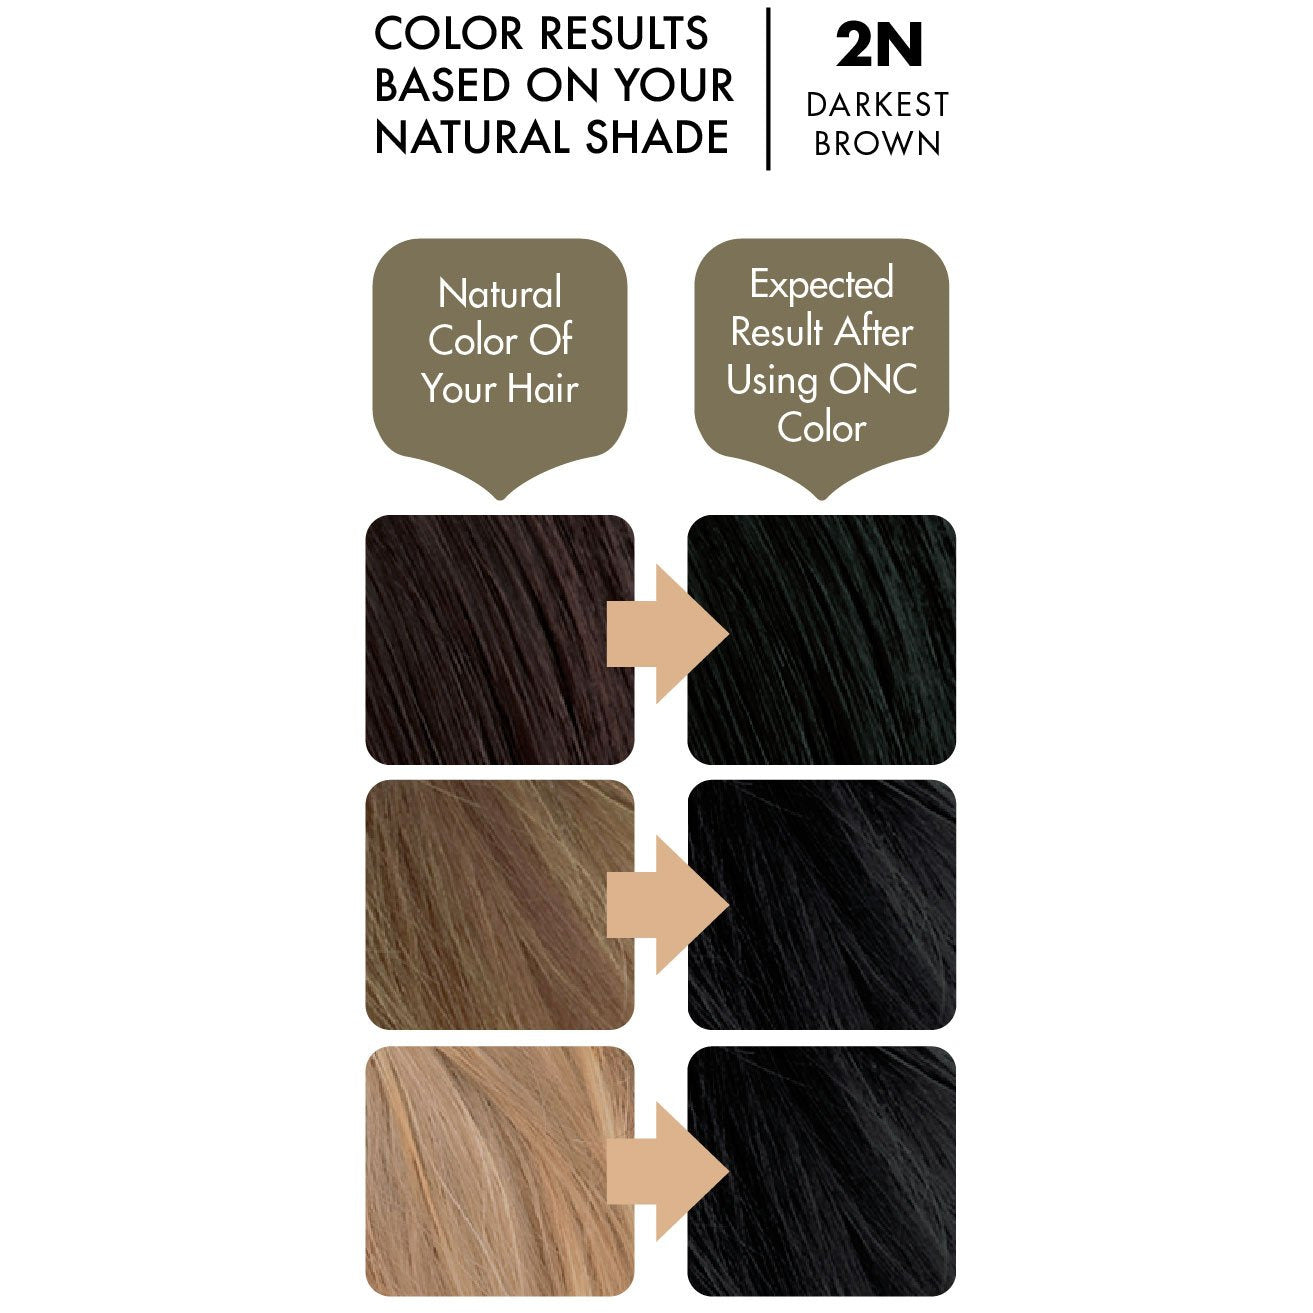 ONC 2N Darkest Brown Hair Dye With Organic Ingredients 120 mL / 4 fl. oz. Color Result